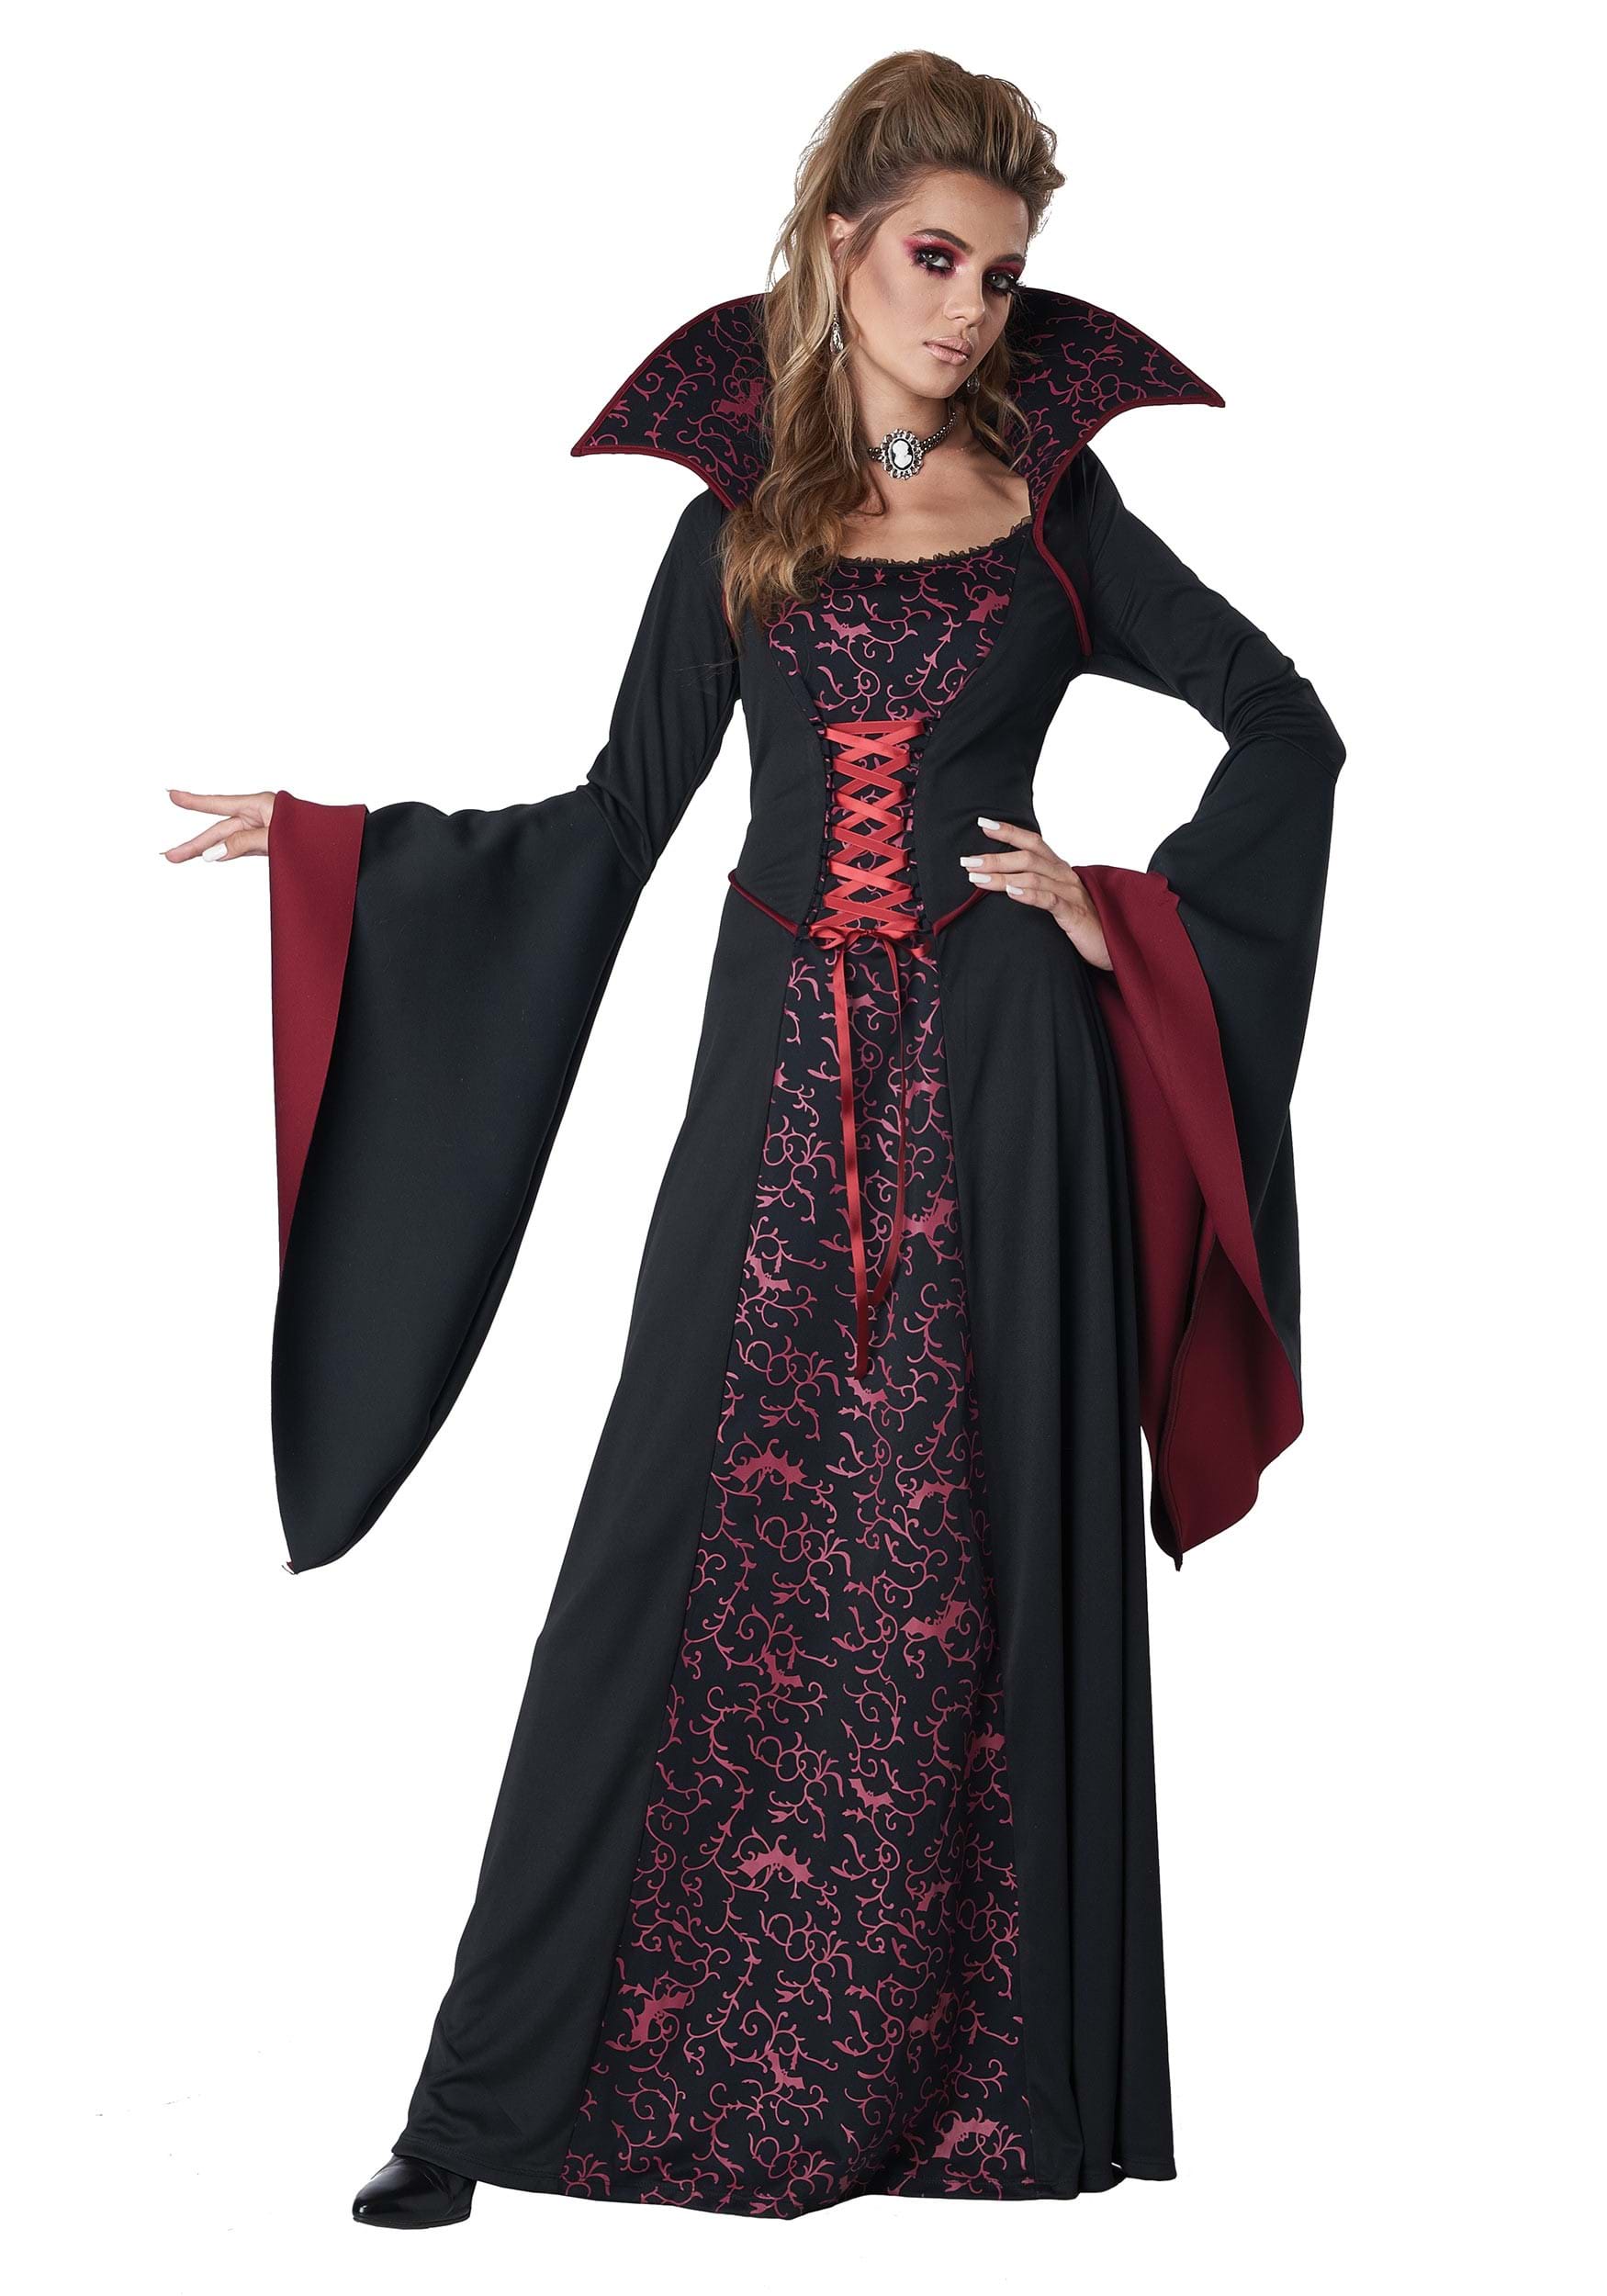 Women’s Royal Vampire Costume